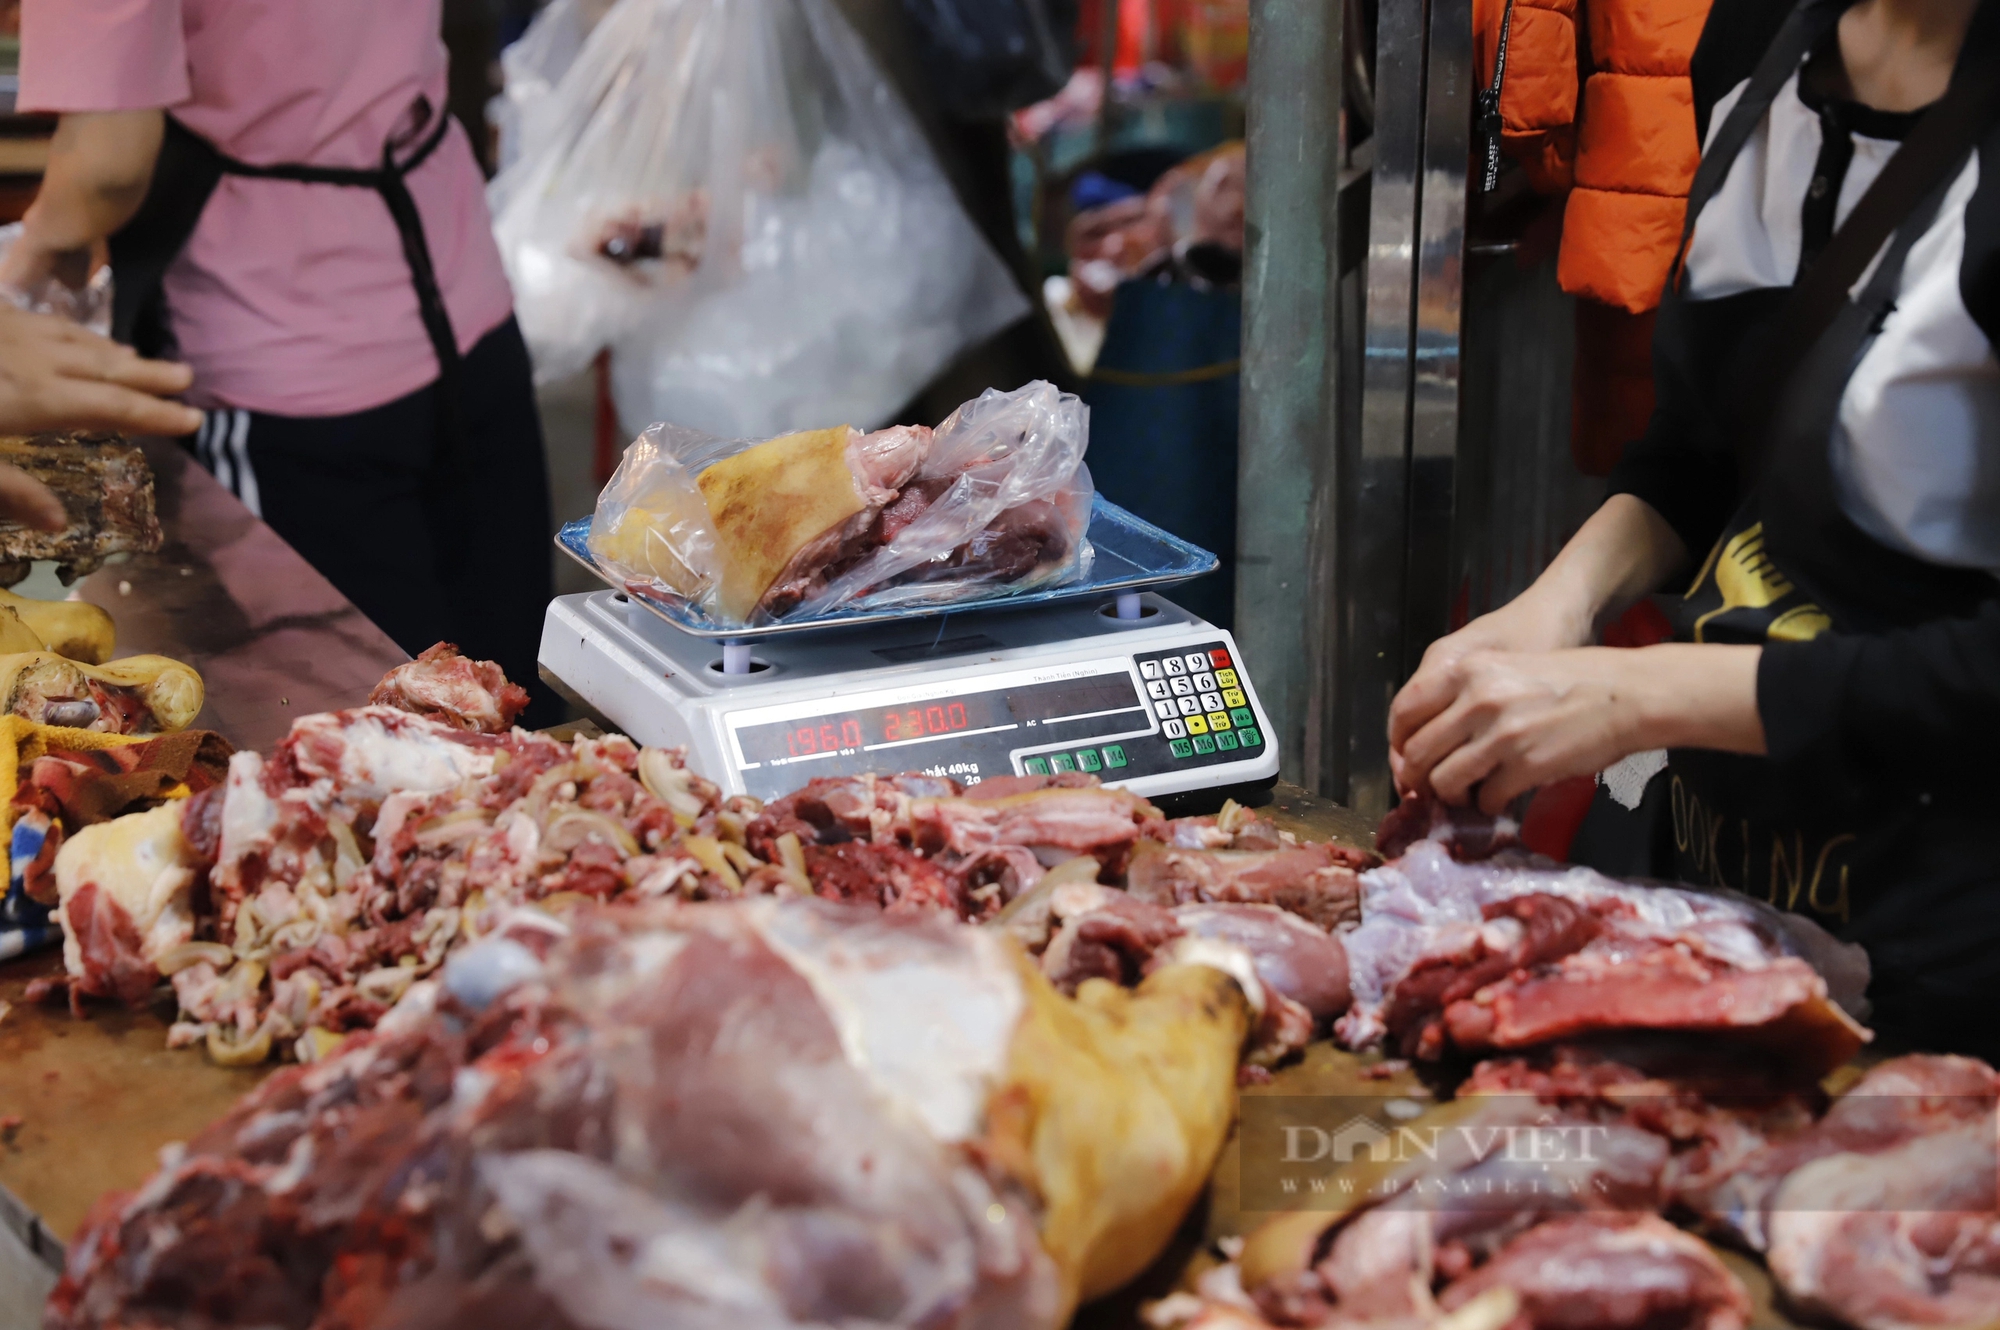 Phí đổi tiền lẻ lên tới 18%, thịt bò giá 250.000 đồng/kg tại chợ Viềng, Phủ Dầy Nam Định hút khách- Ảnh 8.